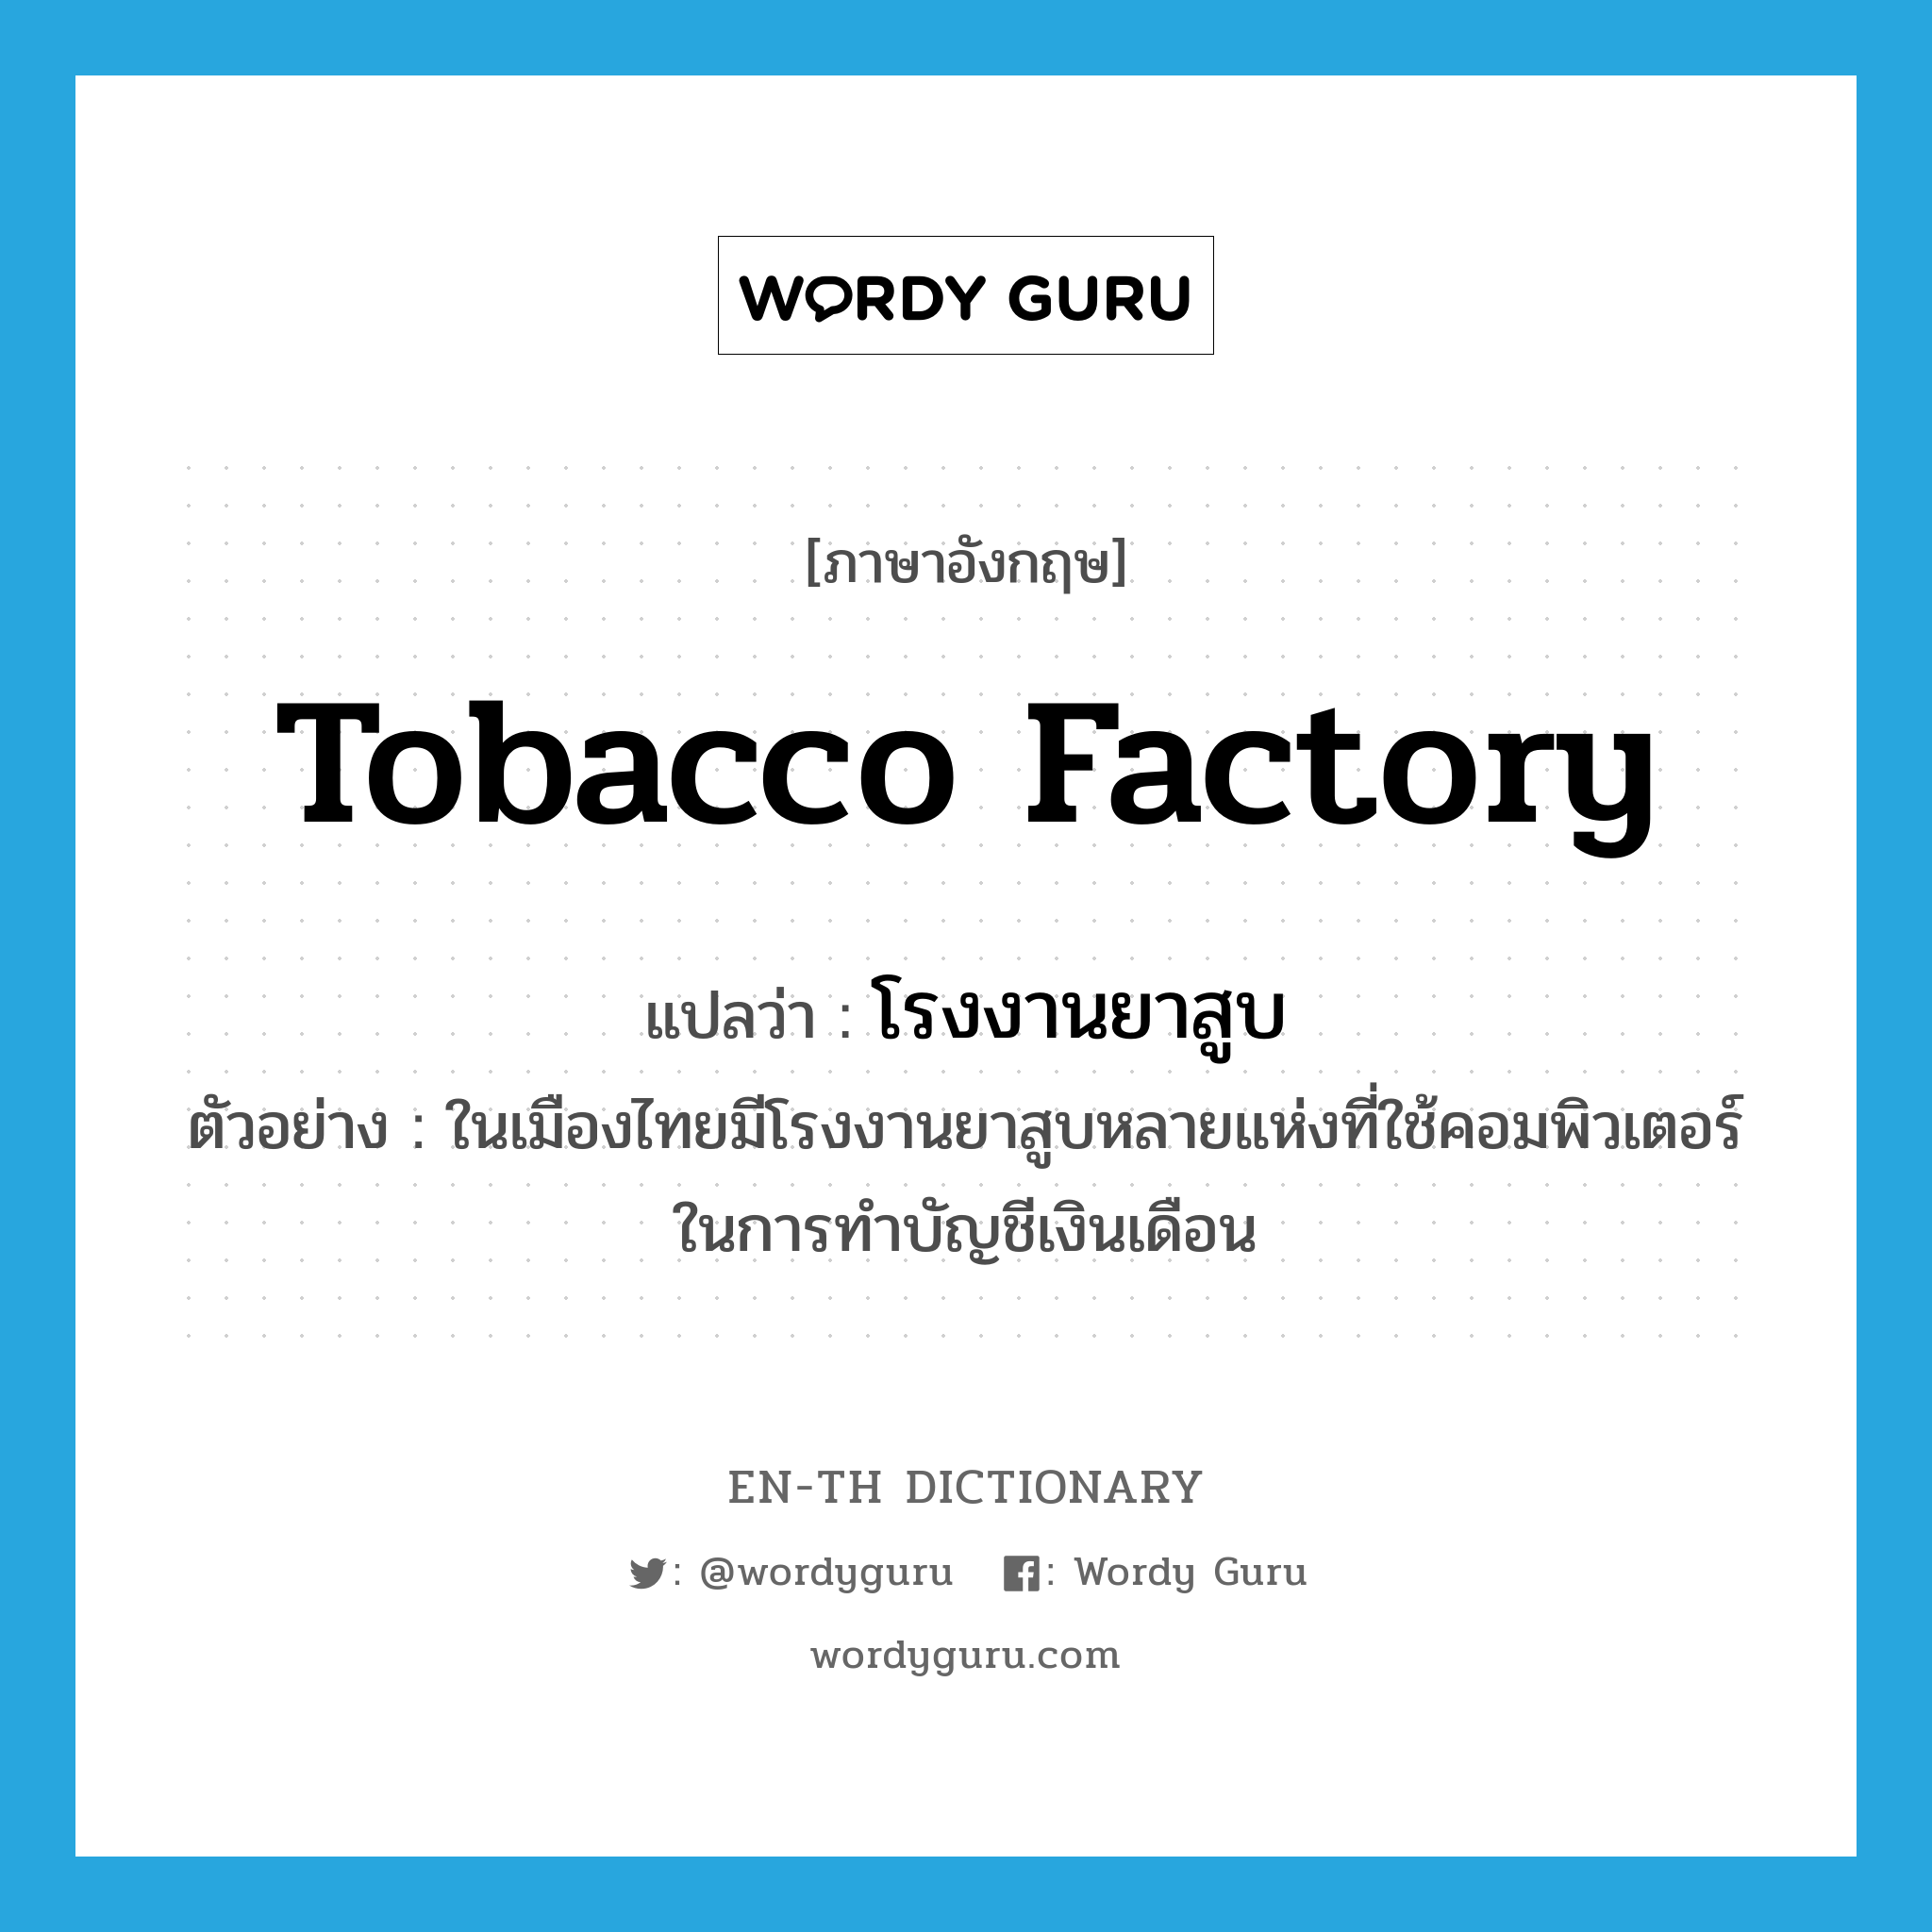 โรงงานยาสูบ ภาษาอังกฤษ?, คำศัพท์ภาษาอังกฤษ โรงงานยาสูบ แปลว่า tobacco factory ประเภท N ตัวอย่าง ในเมืองไทยมีโรงงานยาสูบหลายแห่งที่ใช้คอมพิวเตอร์ในการทำบัญชีเงินเดือน หมวด N